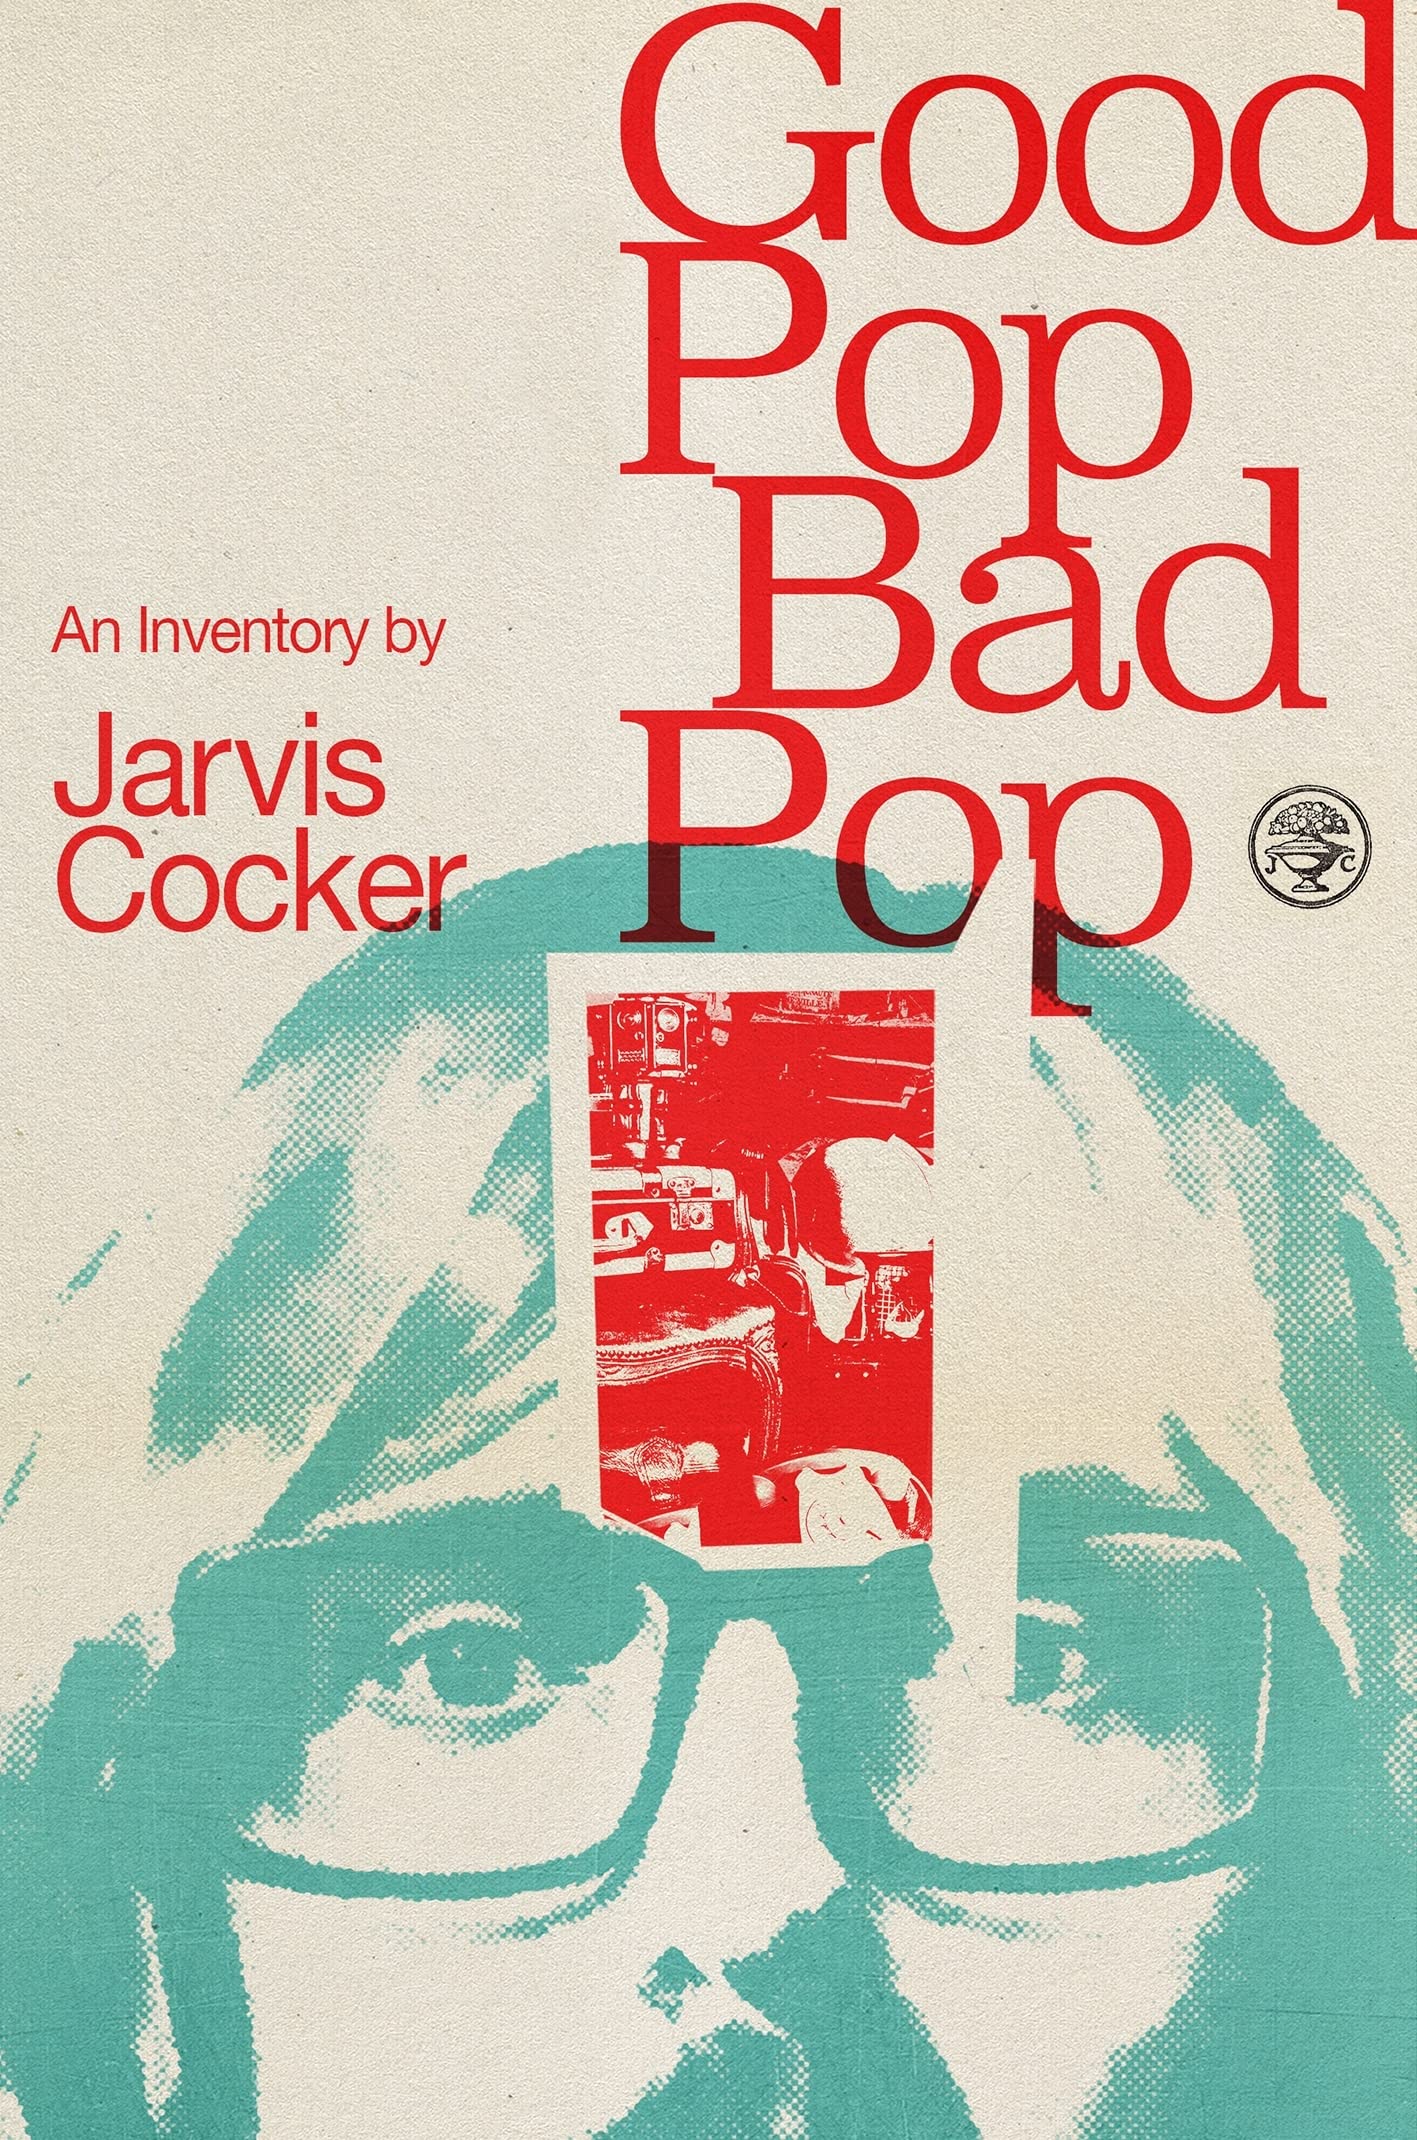 Jarvis Cocker : Good Pop Bad Pop